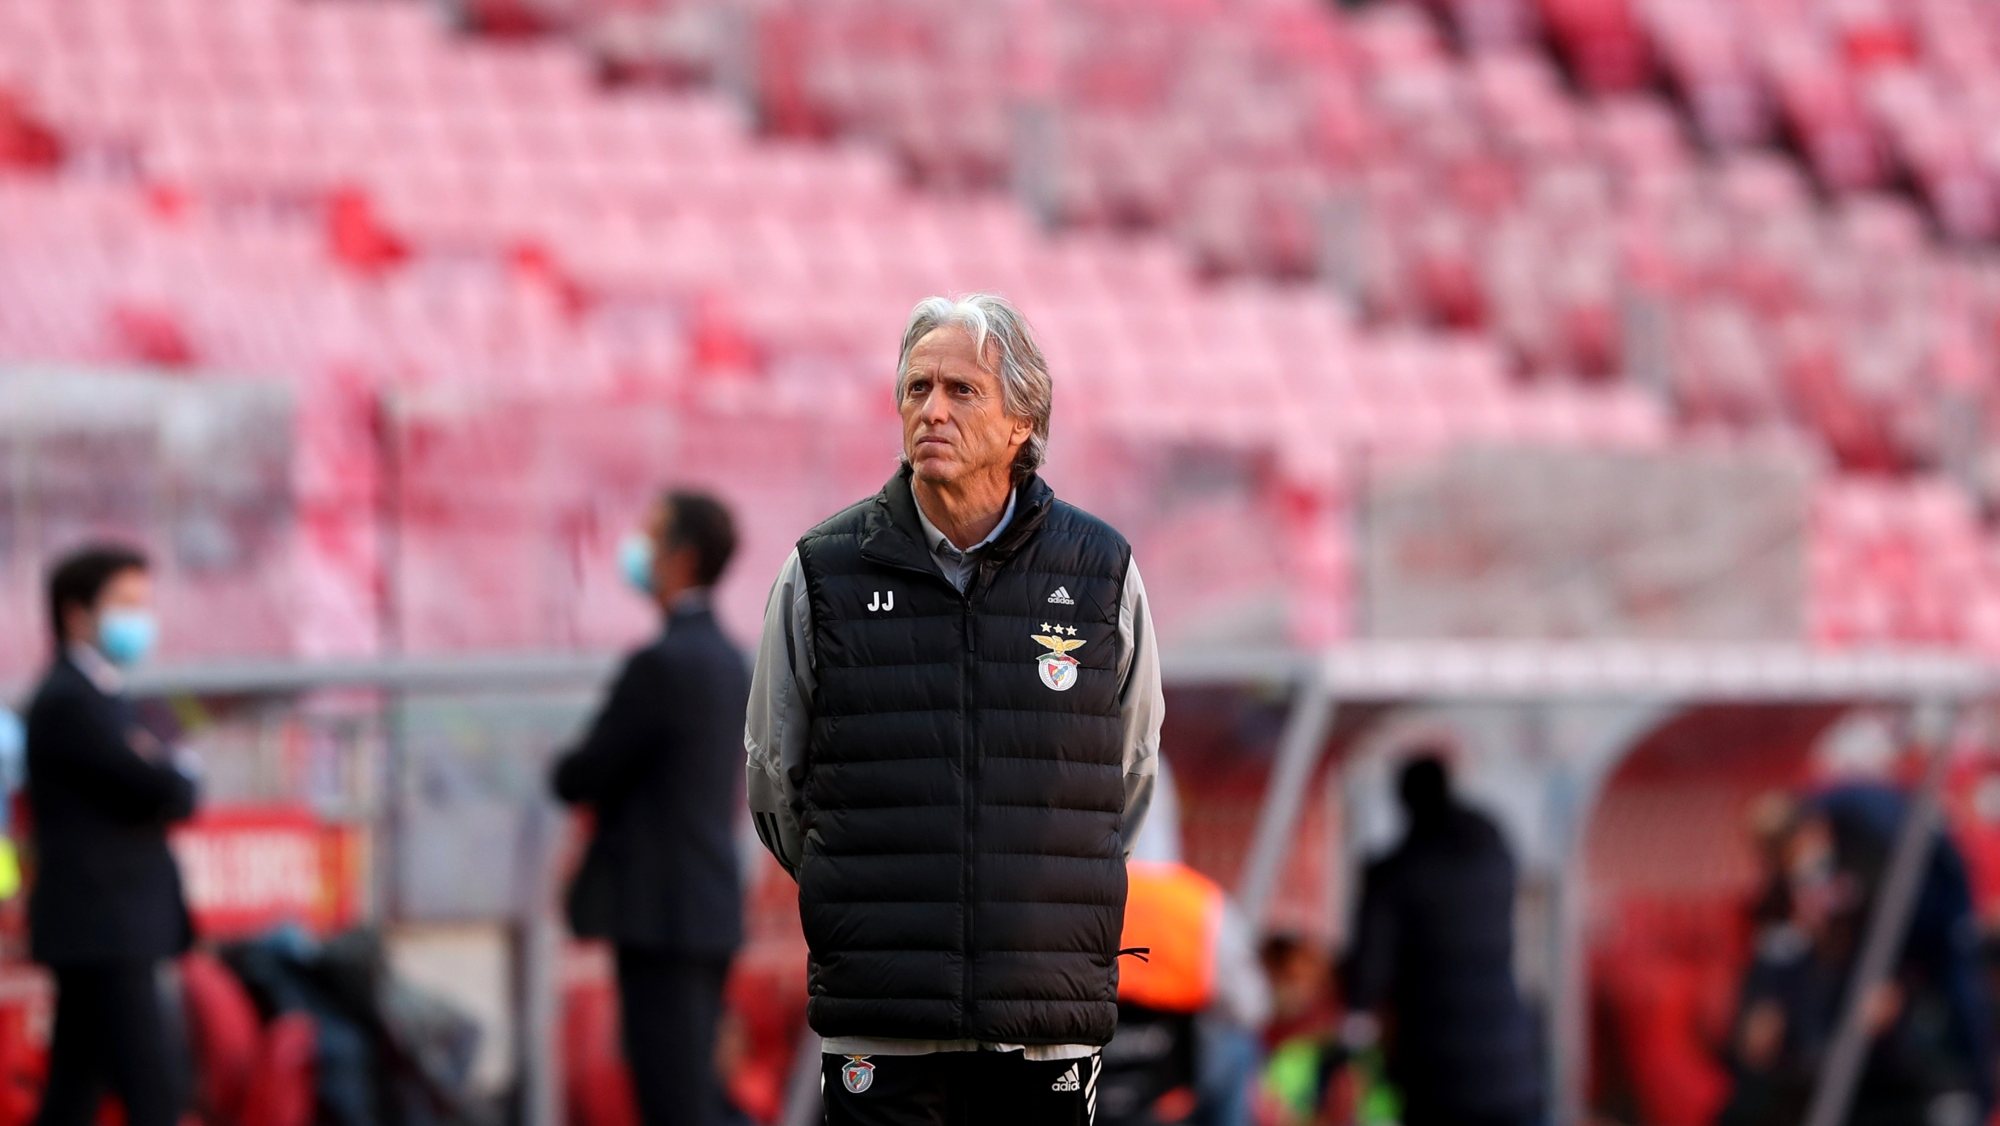 Jorge Jesus deixou o Benfica na última semana de dezembro, entre os dois jogos frente ao FC Porto para a Taça de Portugal e para o Campeonato